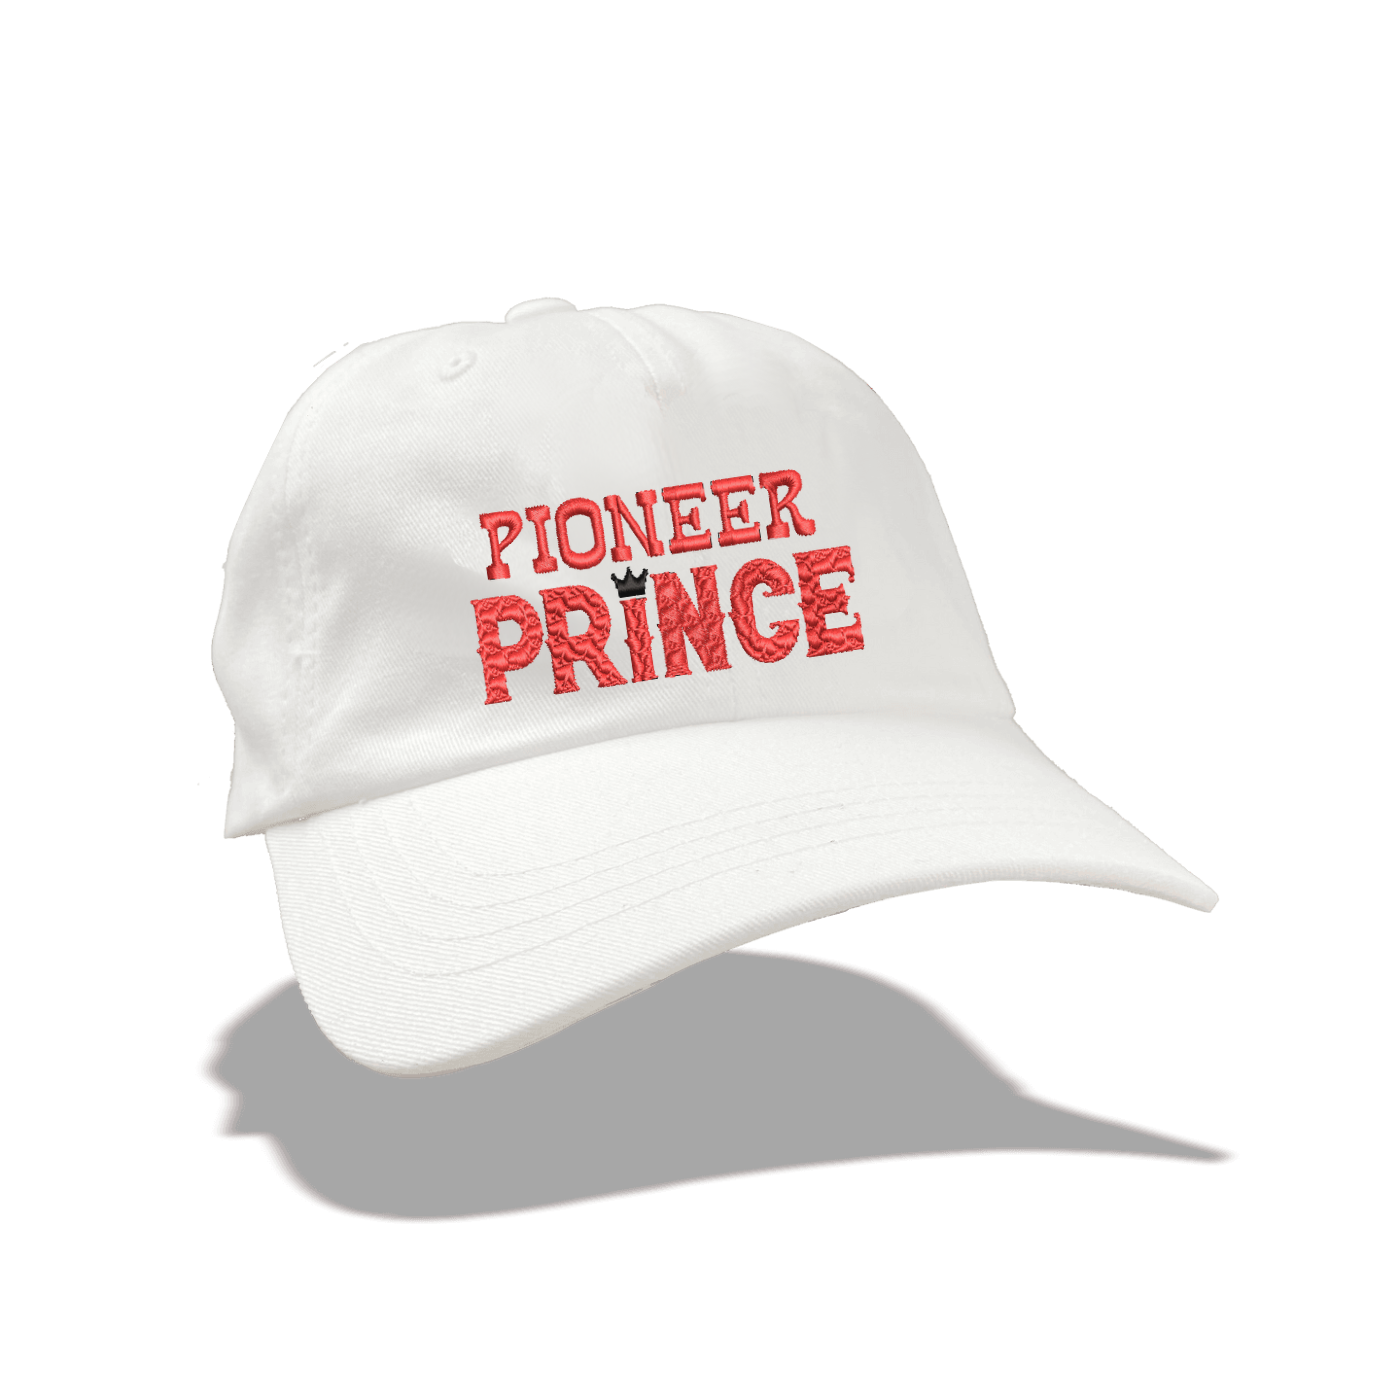 Pioneer Prince Dad Hat